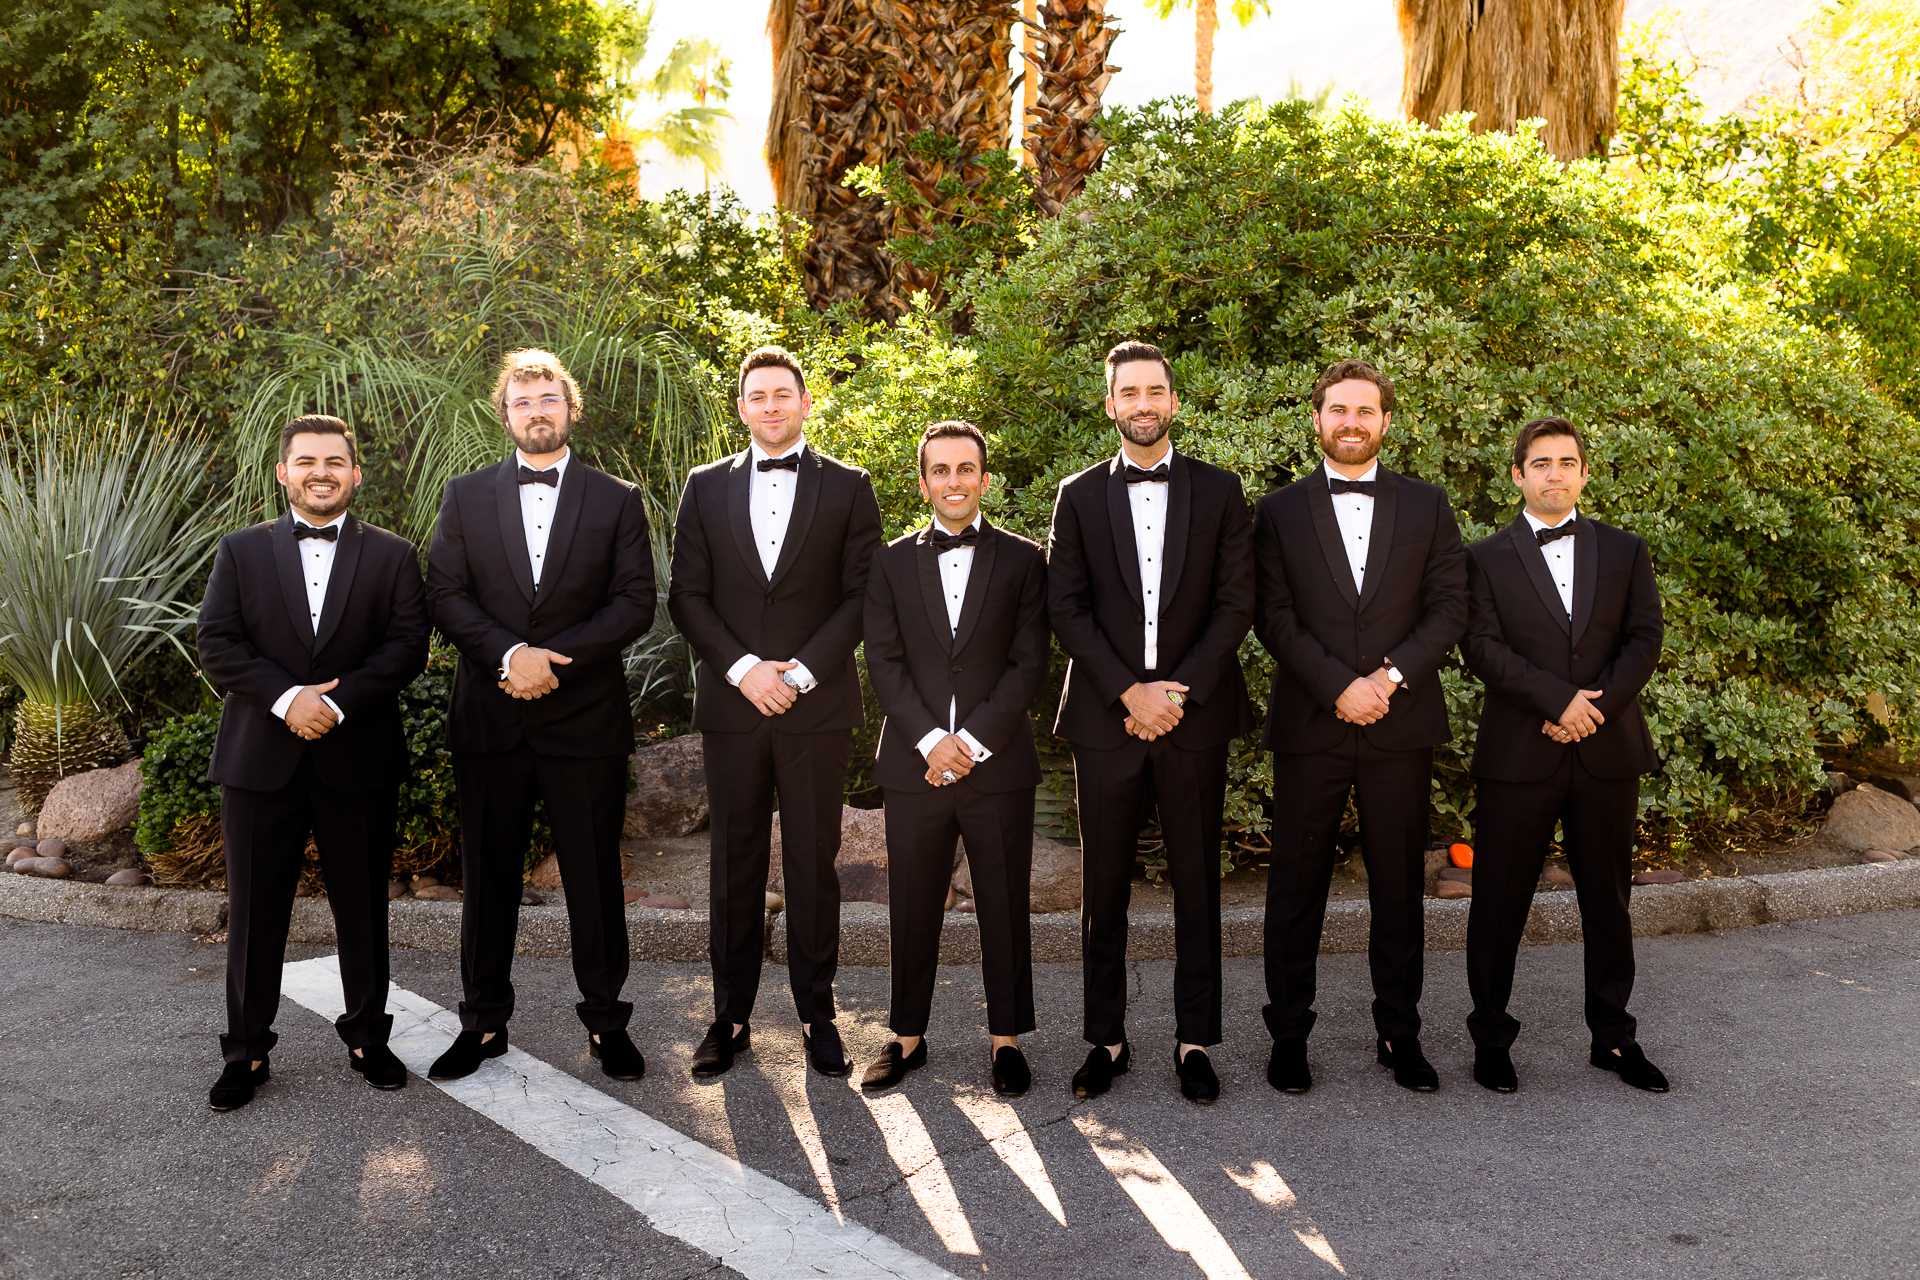 Palm Springs wedding groomsmen photos